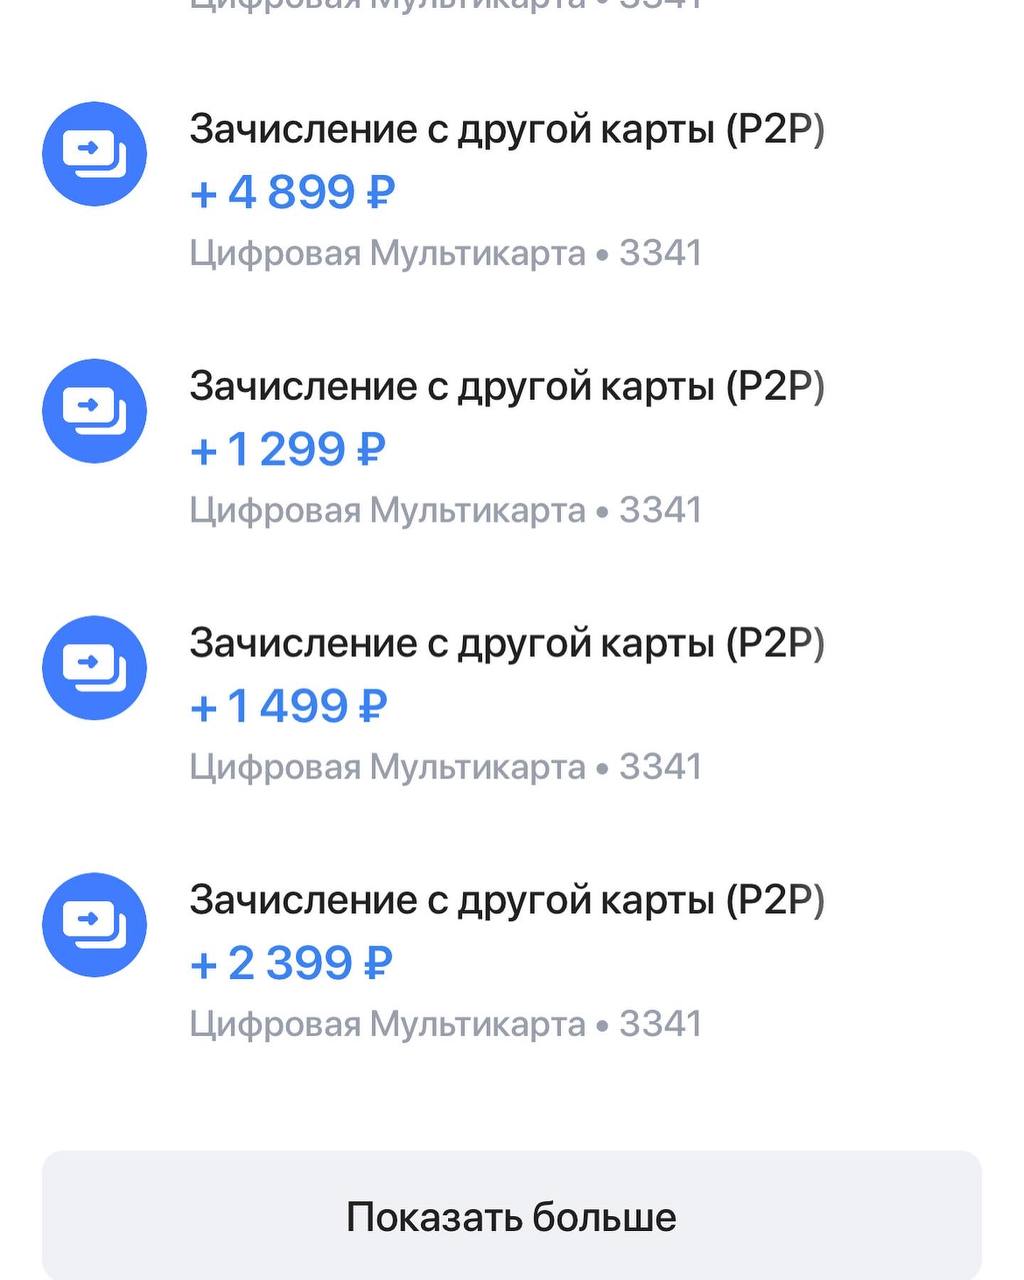 Телеграмм заработок без вложений на русском с выводом денег фото 98